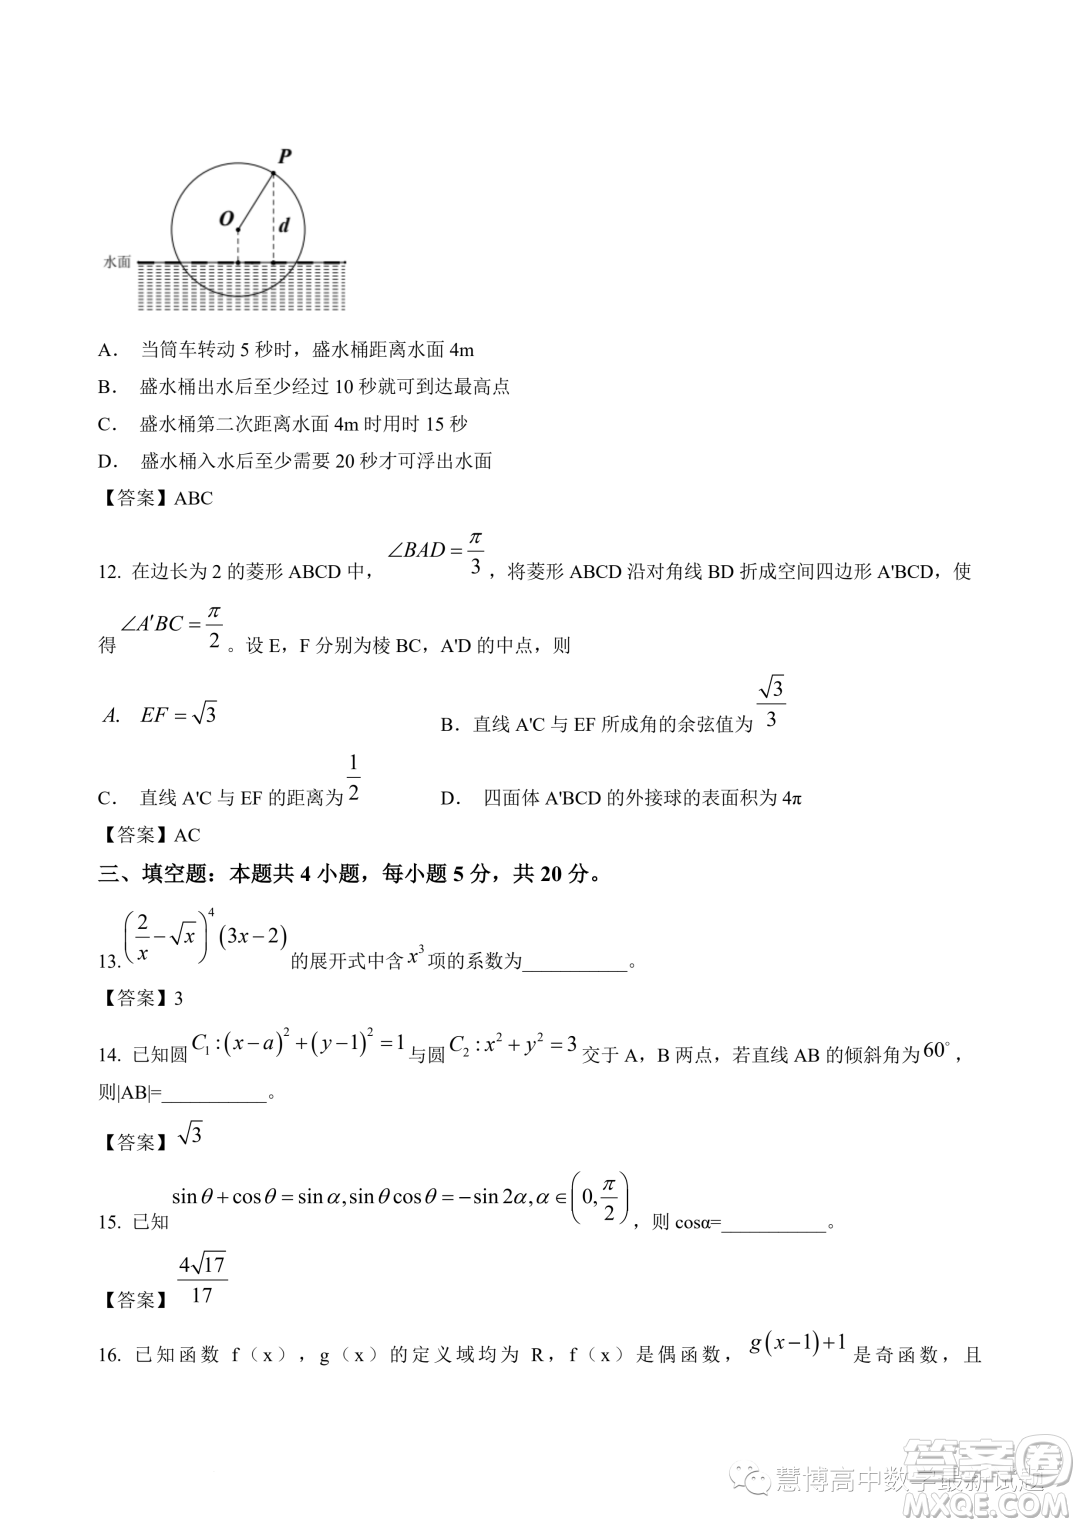 江苏南通2023届高三高考前练习数学试题答案